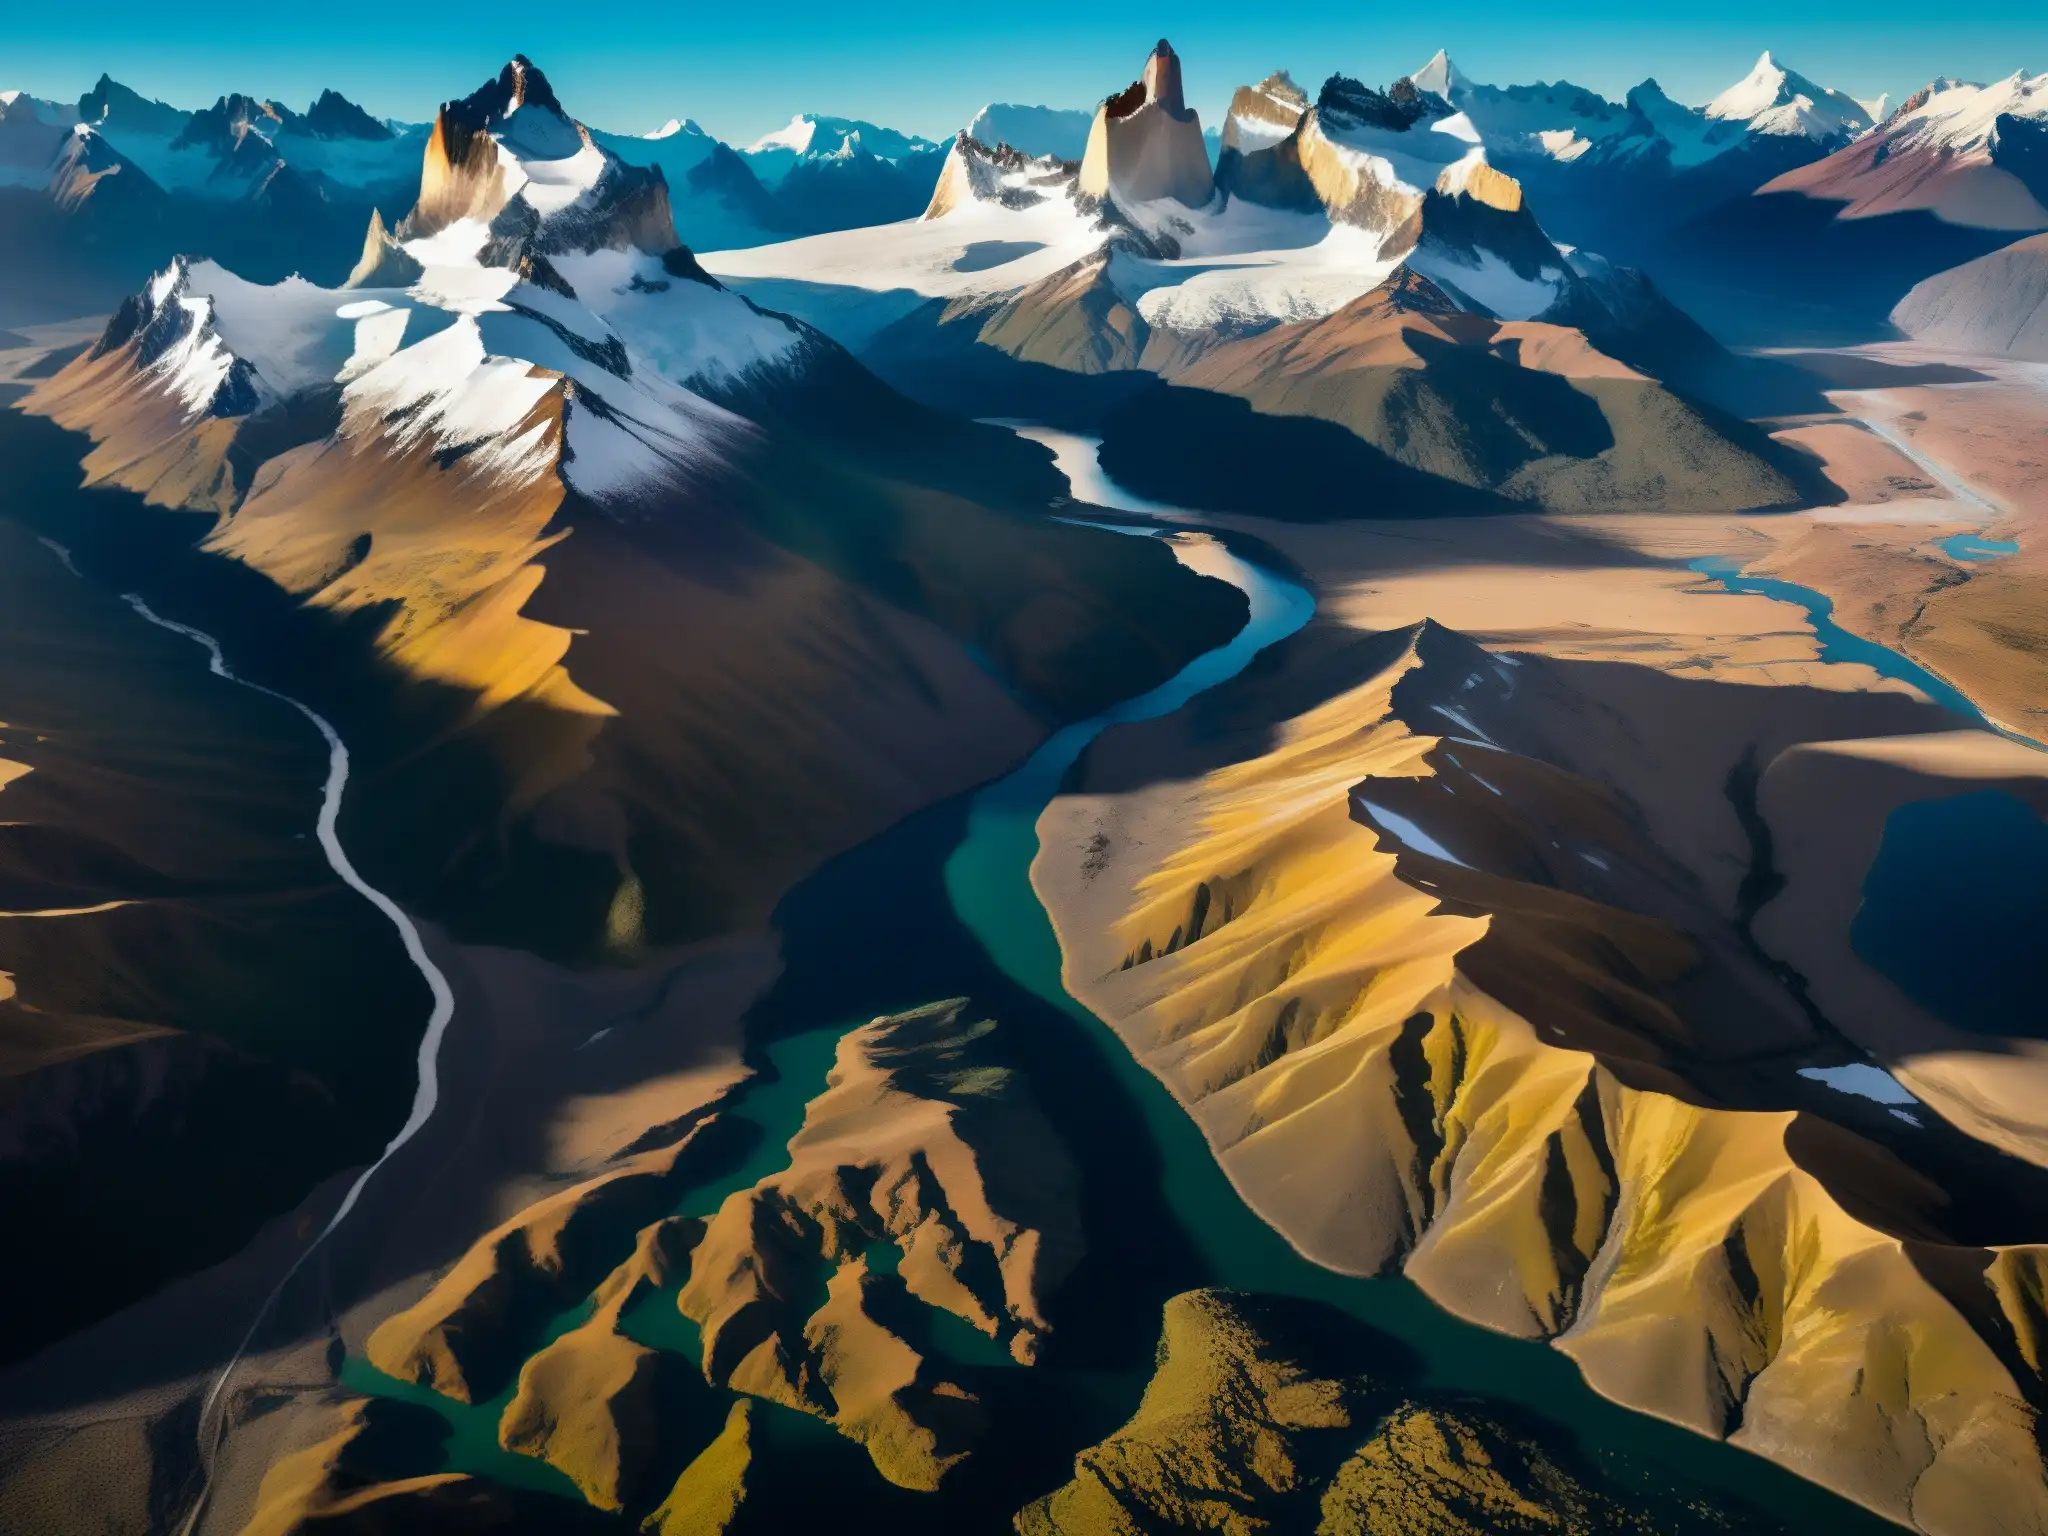 Vista aérea impresionante de la Patagonia, con los picos nevados de los Andes y las llanuras desoladas